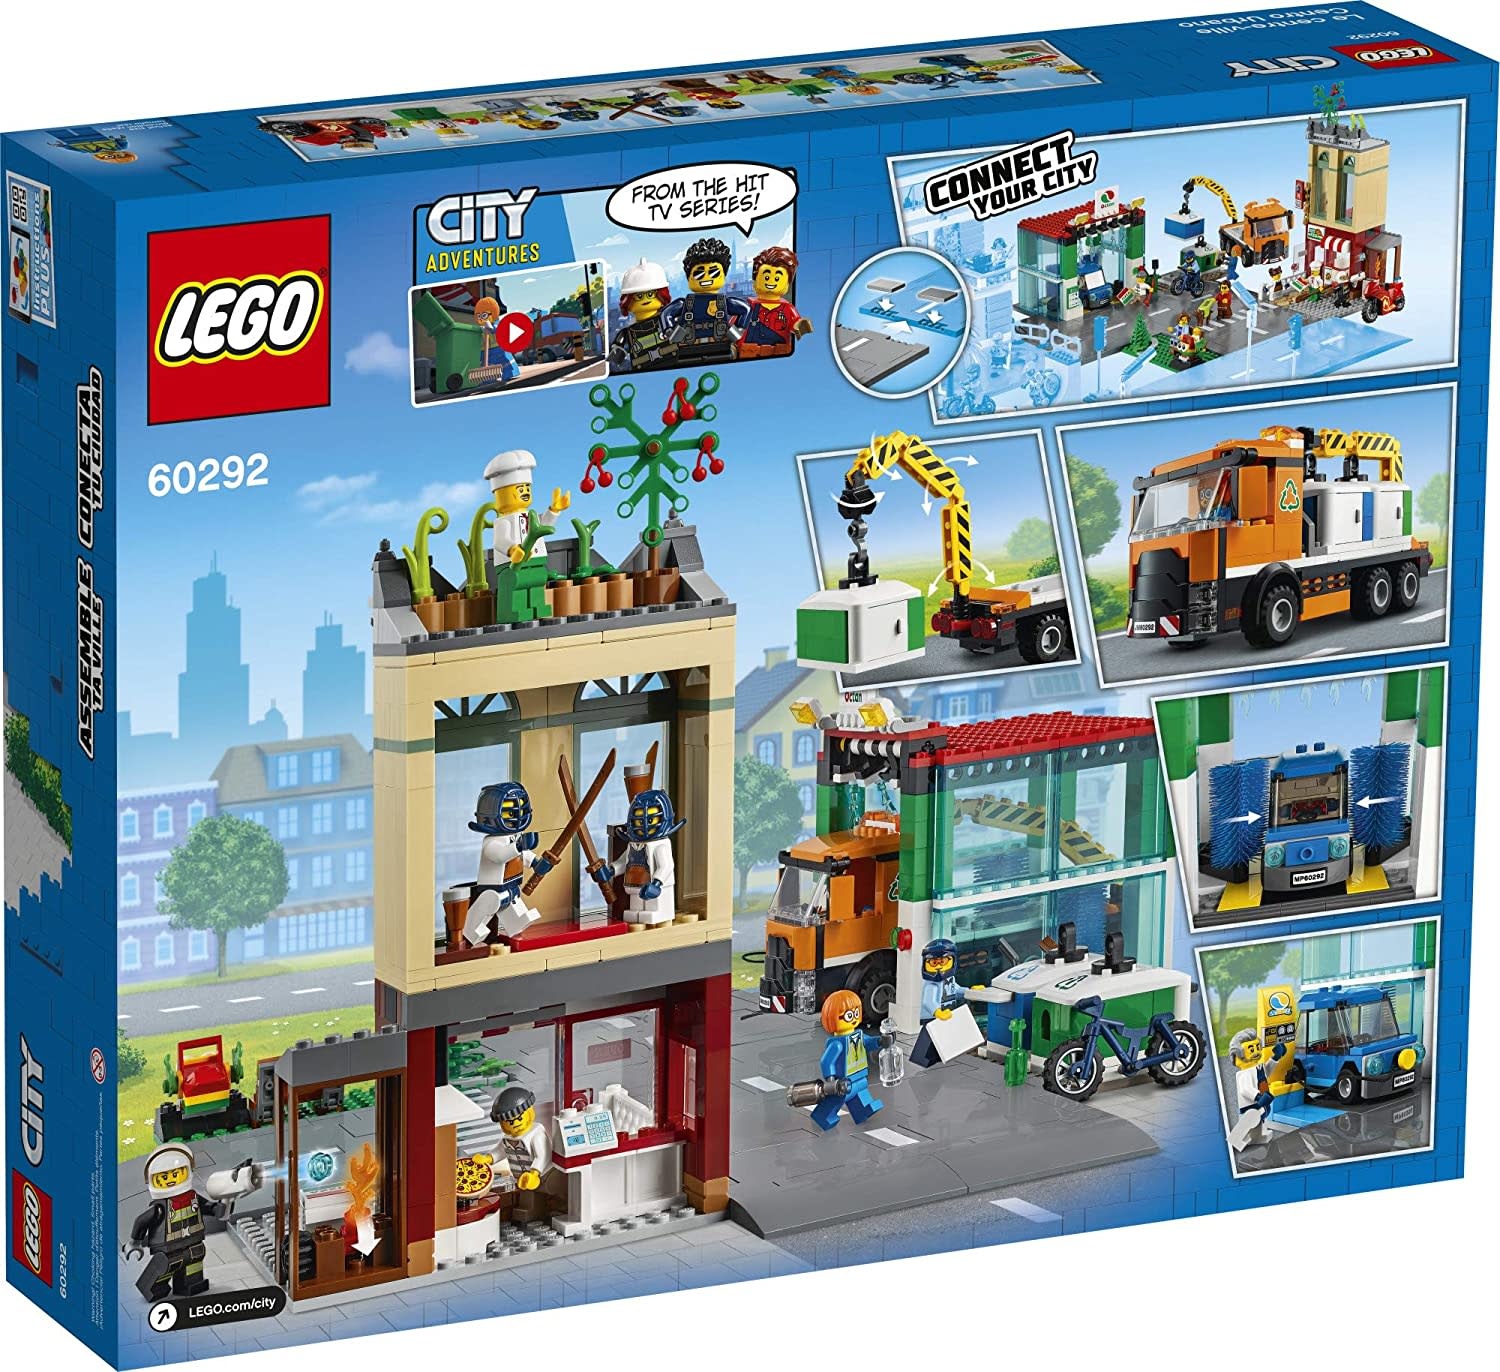 Lego Lego City Town Center